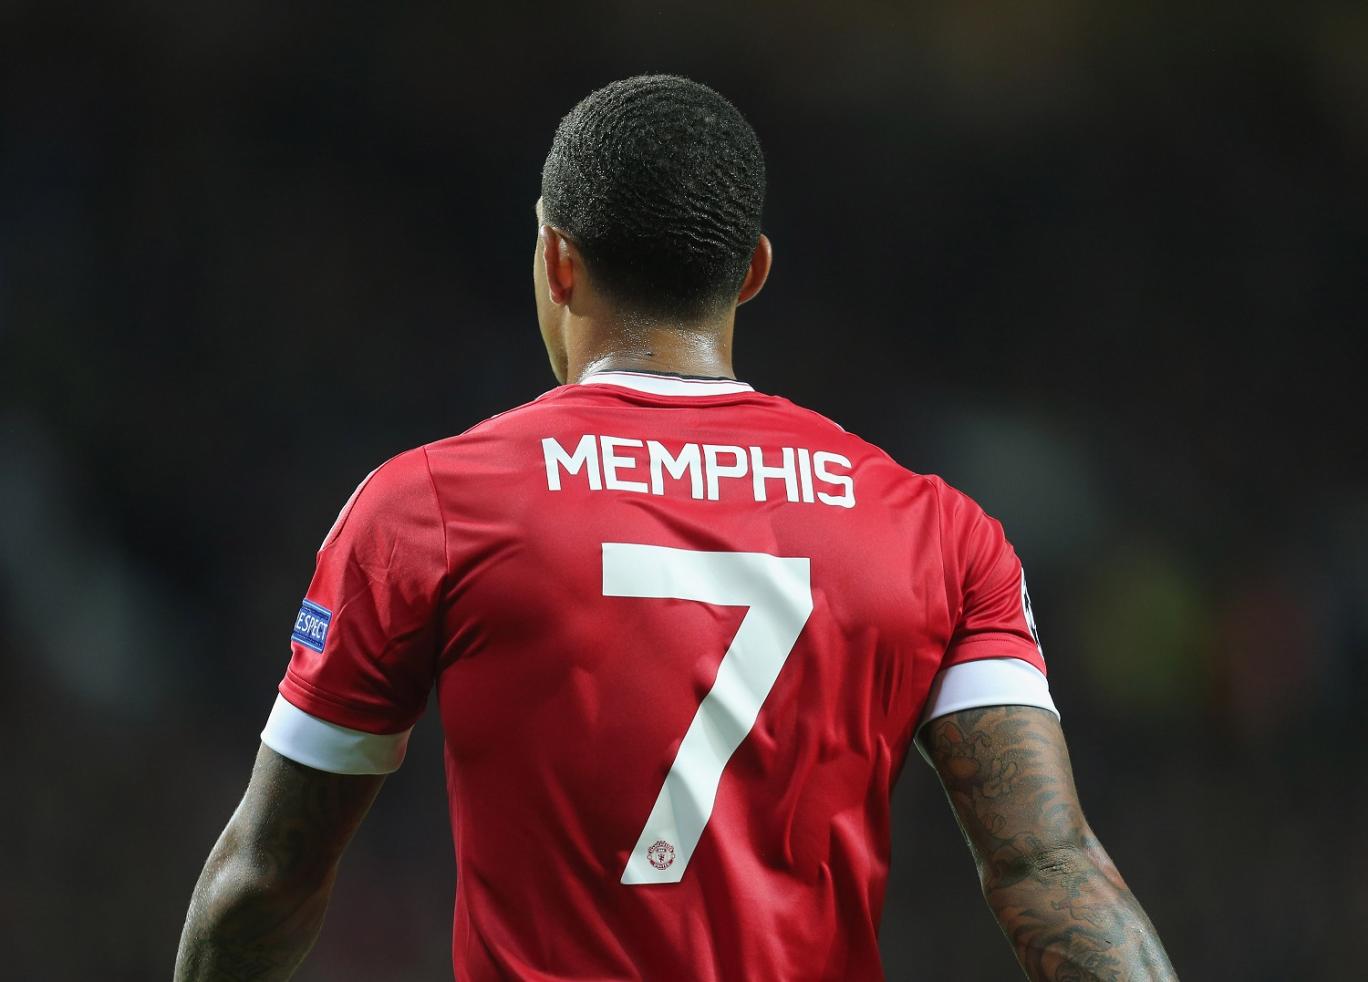 Memphis Depay star des ventes de maillots à Manchester United